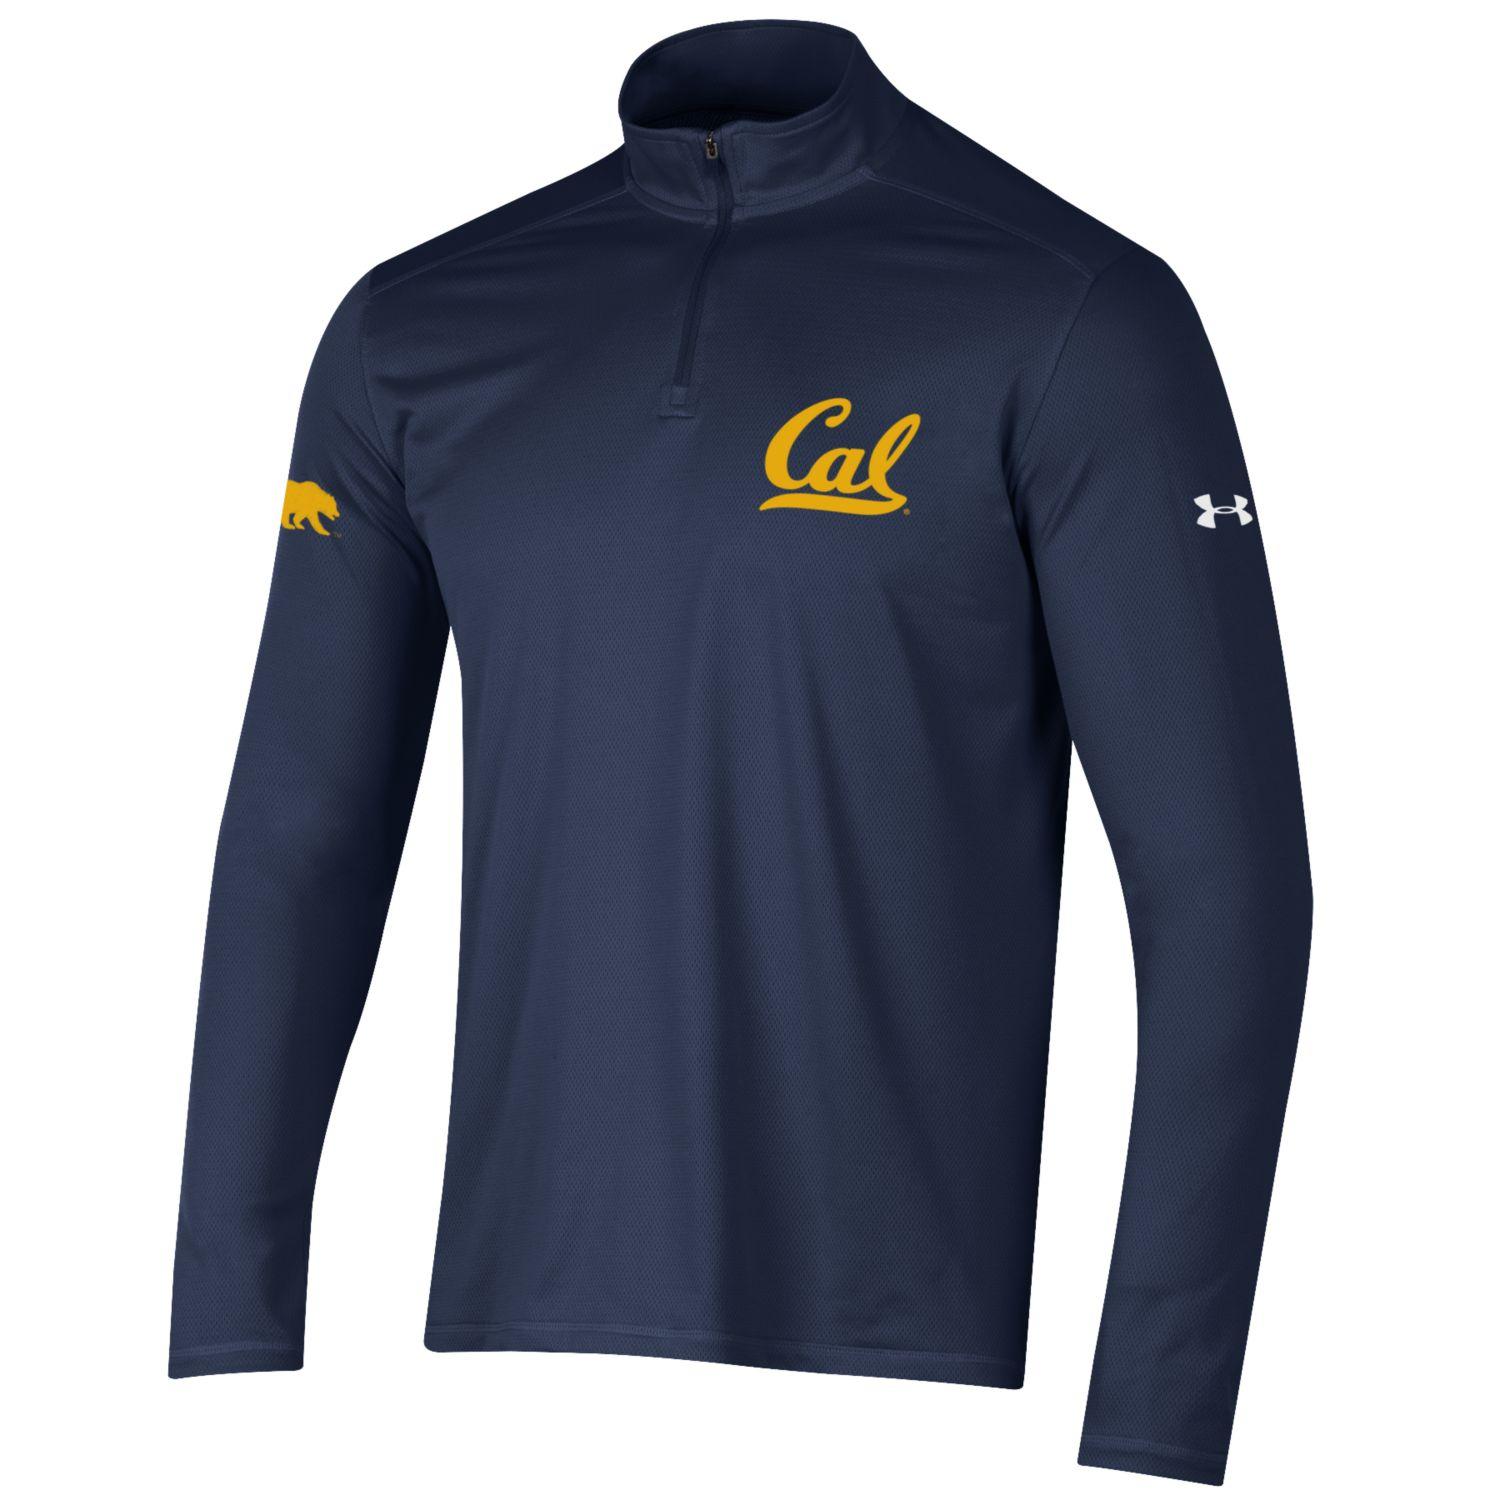 U.C. Berkeley Cal Bears embroidered men's Under Armour tech 1/4 Zip shirt-Navy-Shop College Wear